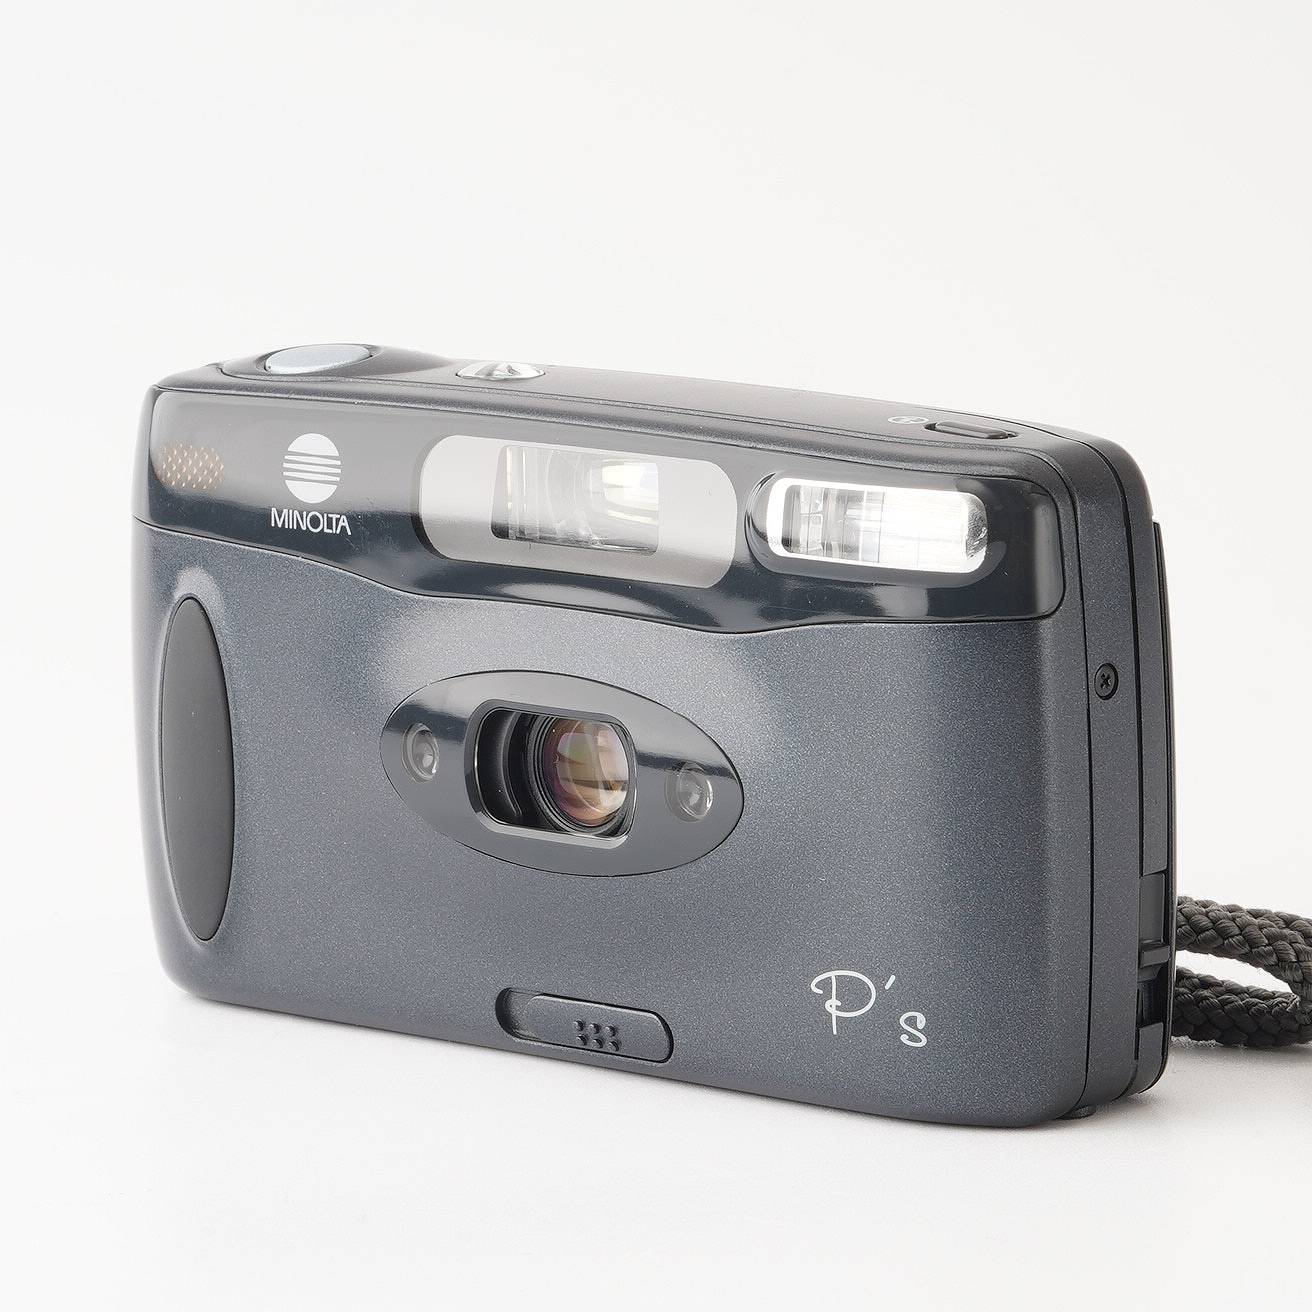 ミノルタ Minolta P`s Ps ピーズ Panorama 35mm コンパクトフィルムカメラ